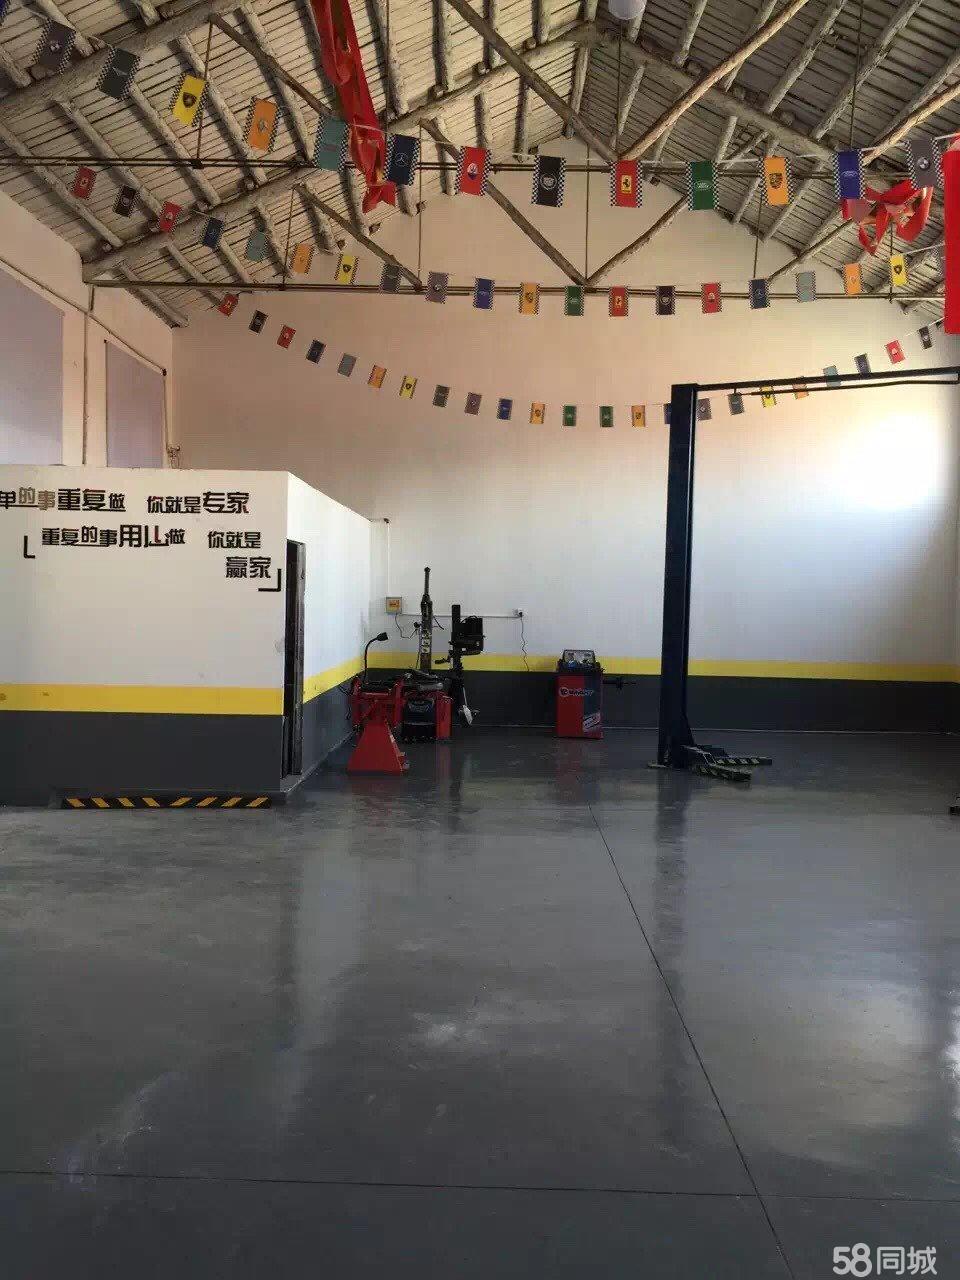 (转让) 营业中汽车综合修理初家 港城东大街上 厂房 1000平米